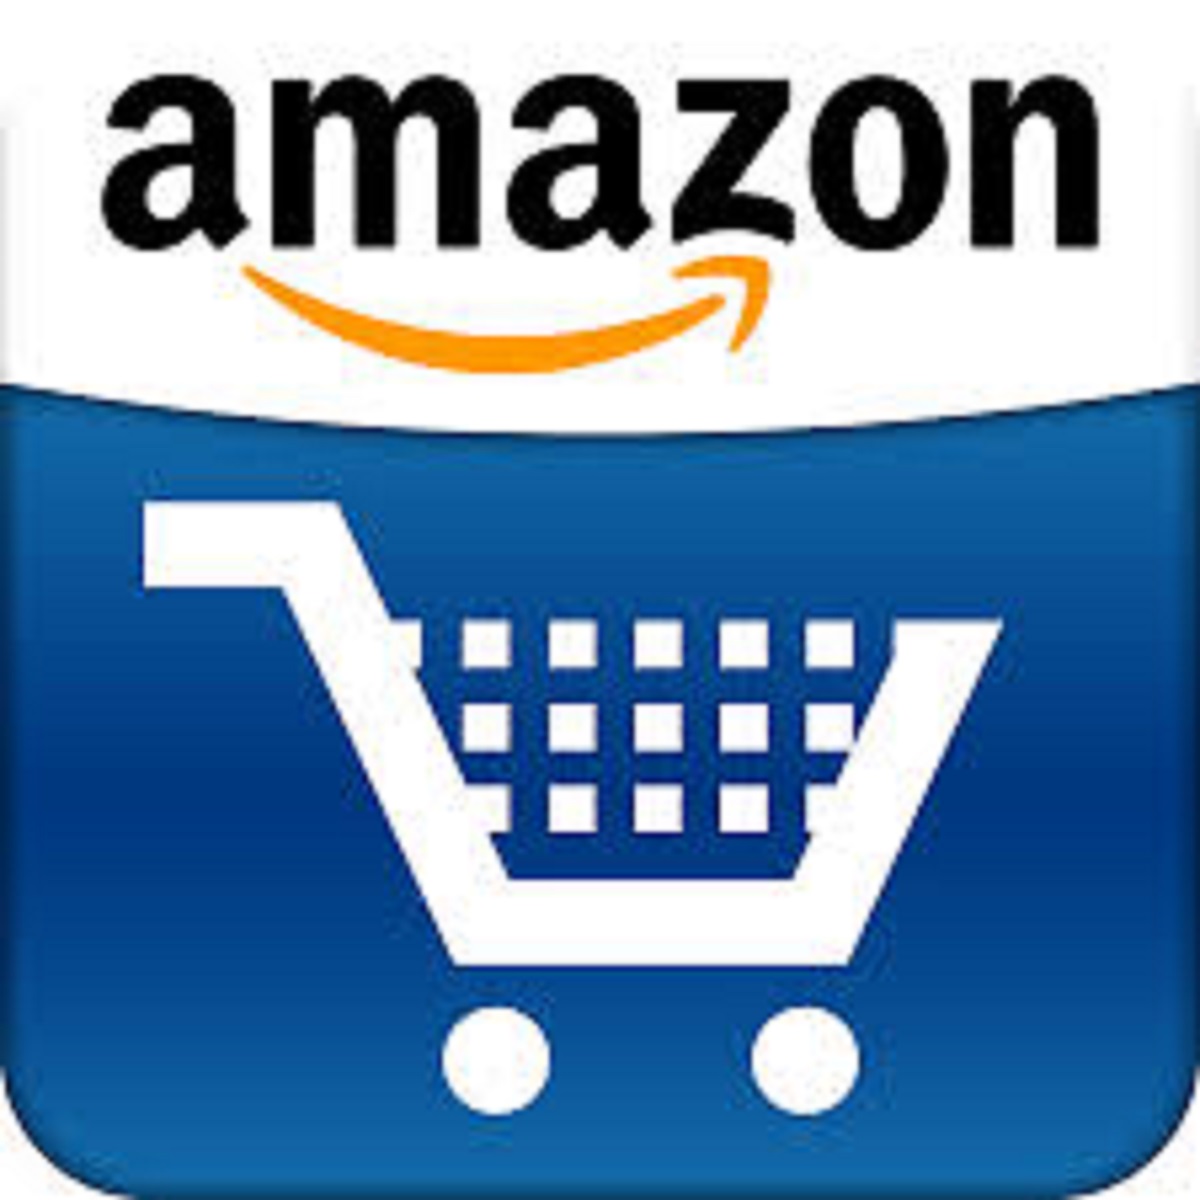 Compra los libros de Anna Rossell en Amazon / Compra els llibres d'Anna Rossell a Amazon